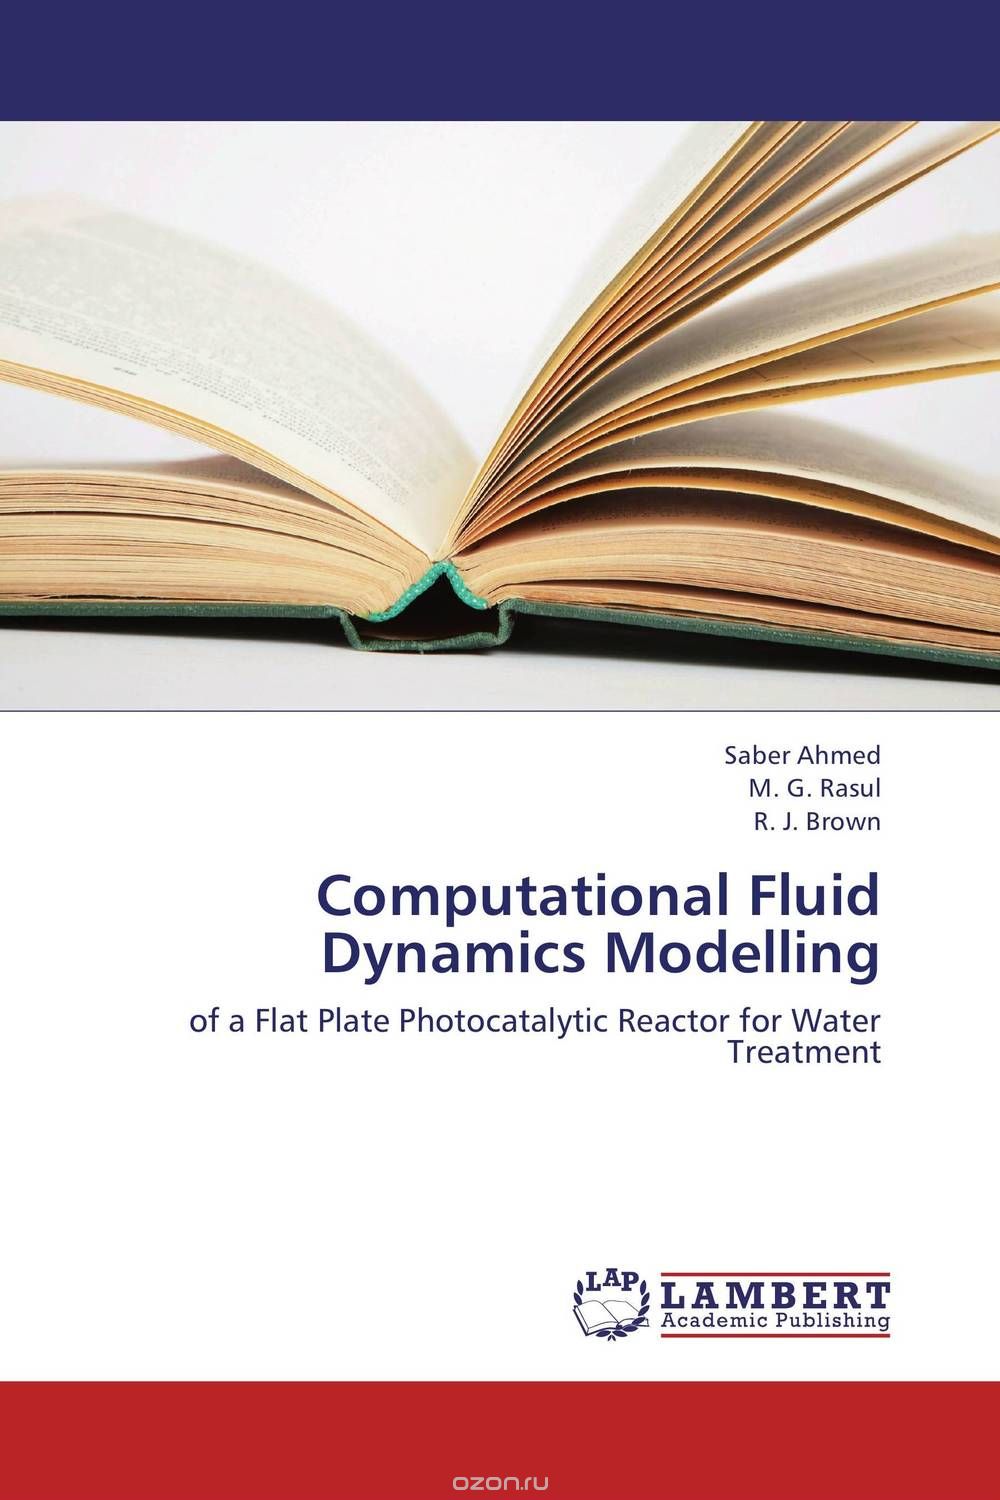 Скачать книгу "Computational Fluid Dynamics Modelling"